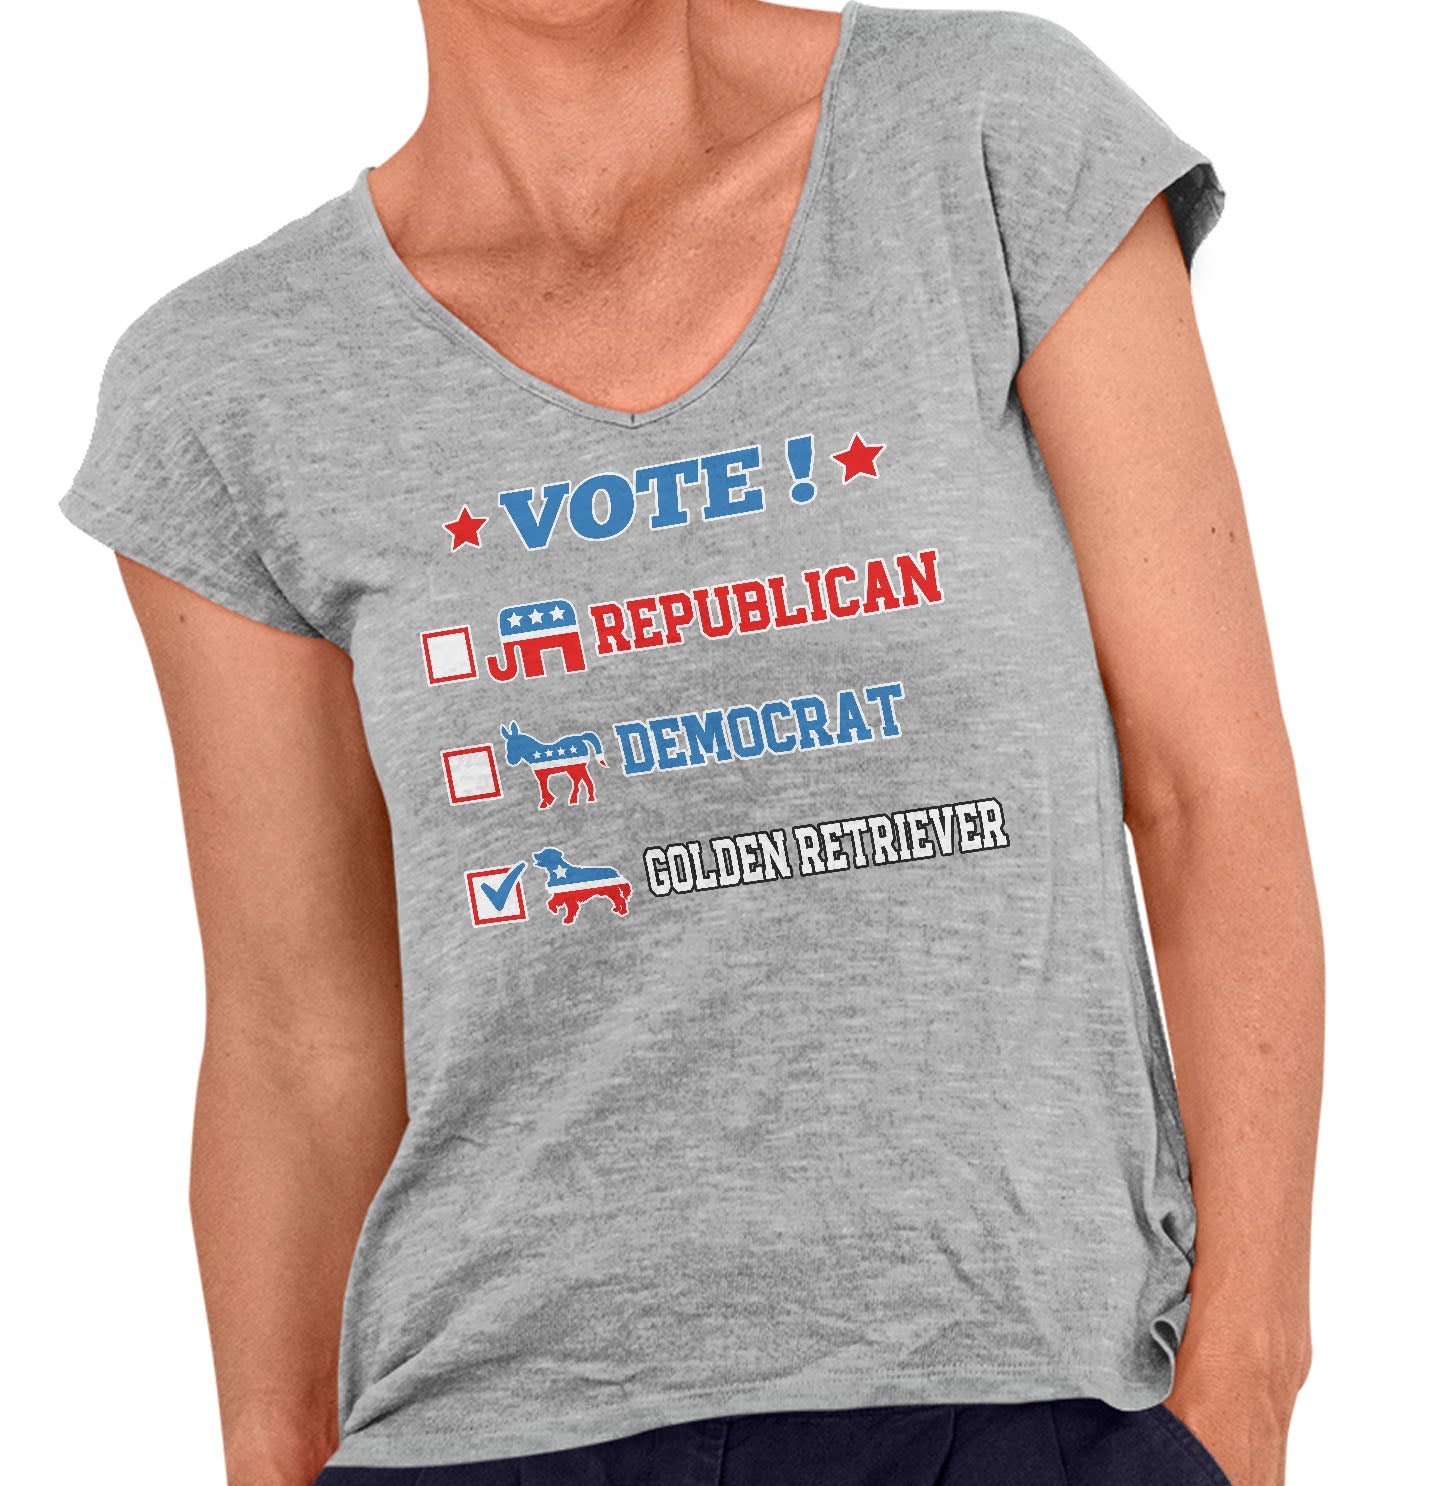 Vote for the Golden Retriever - Women's V-Neck T-Shirt